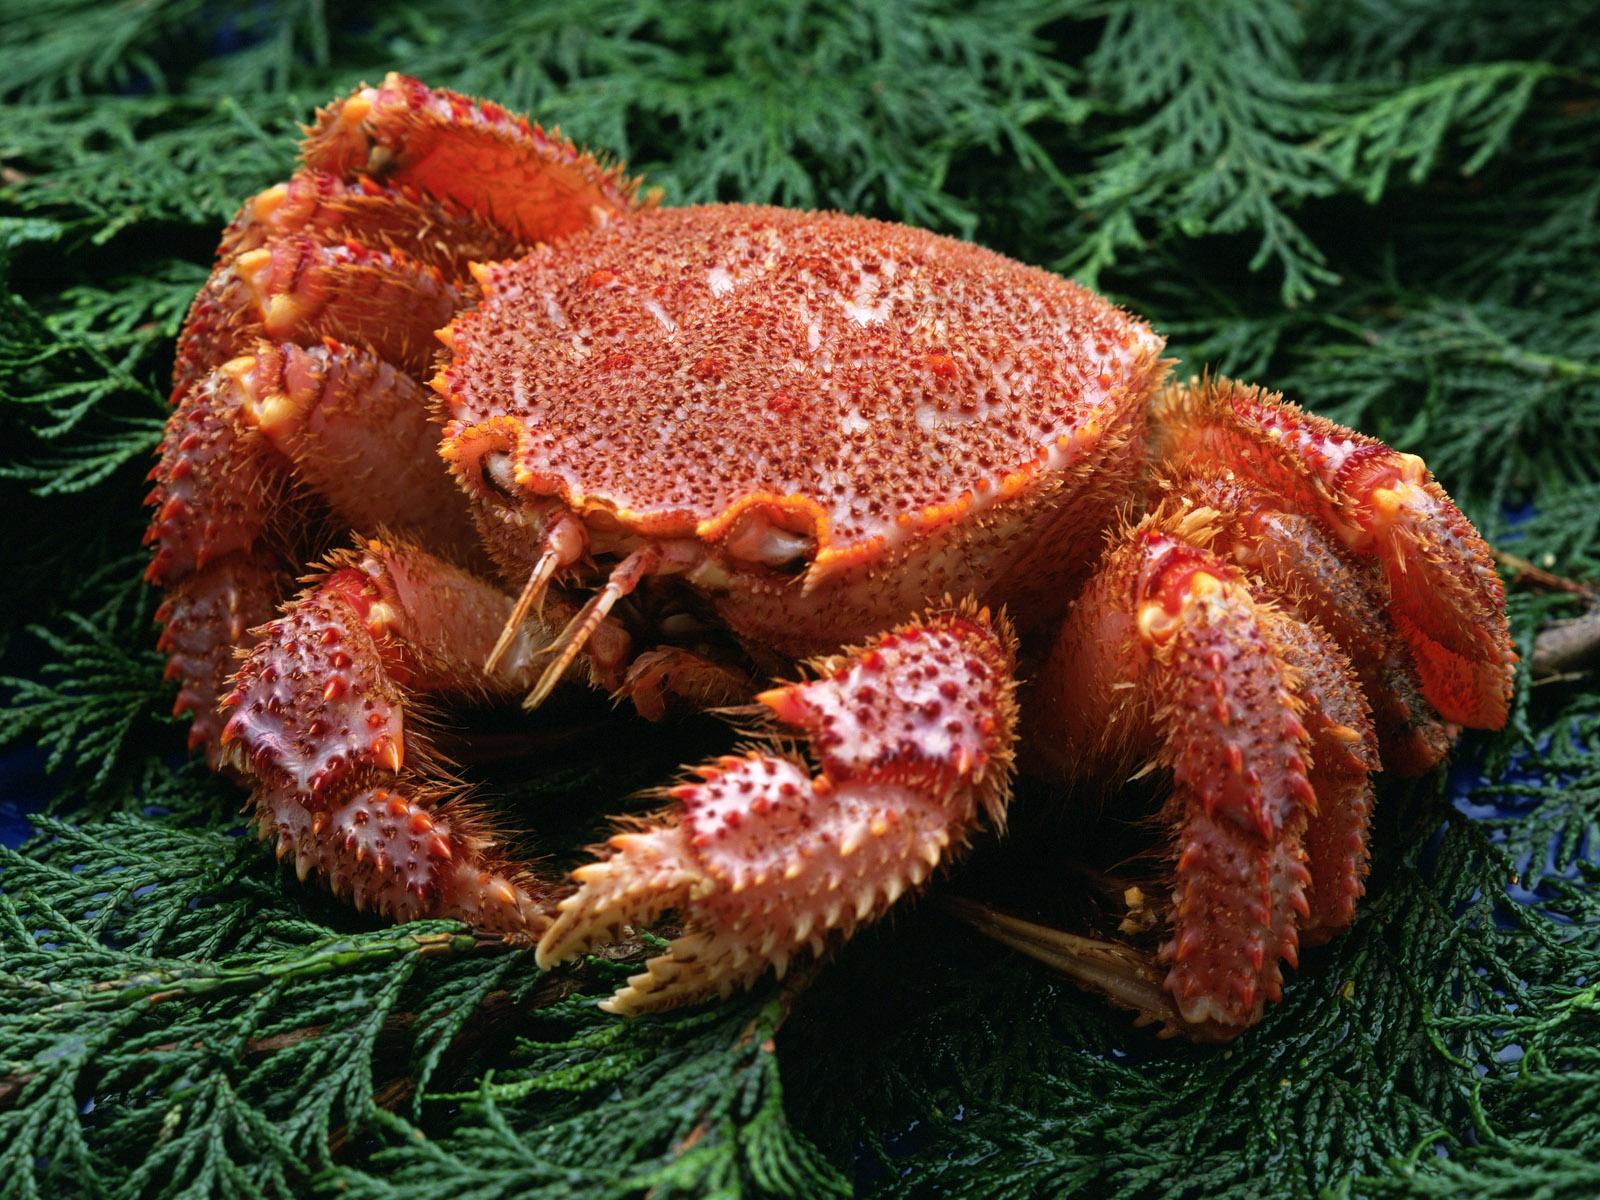 Afbeeldingen Krabben Voedsel Zeevruchten krab spijs